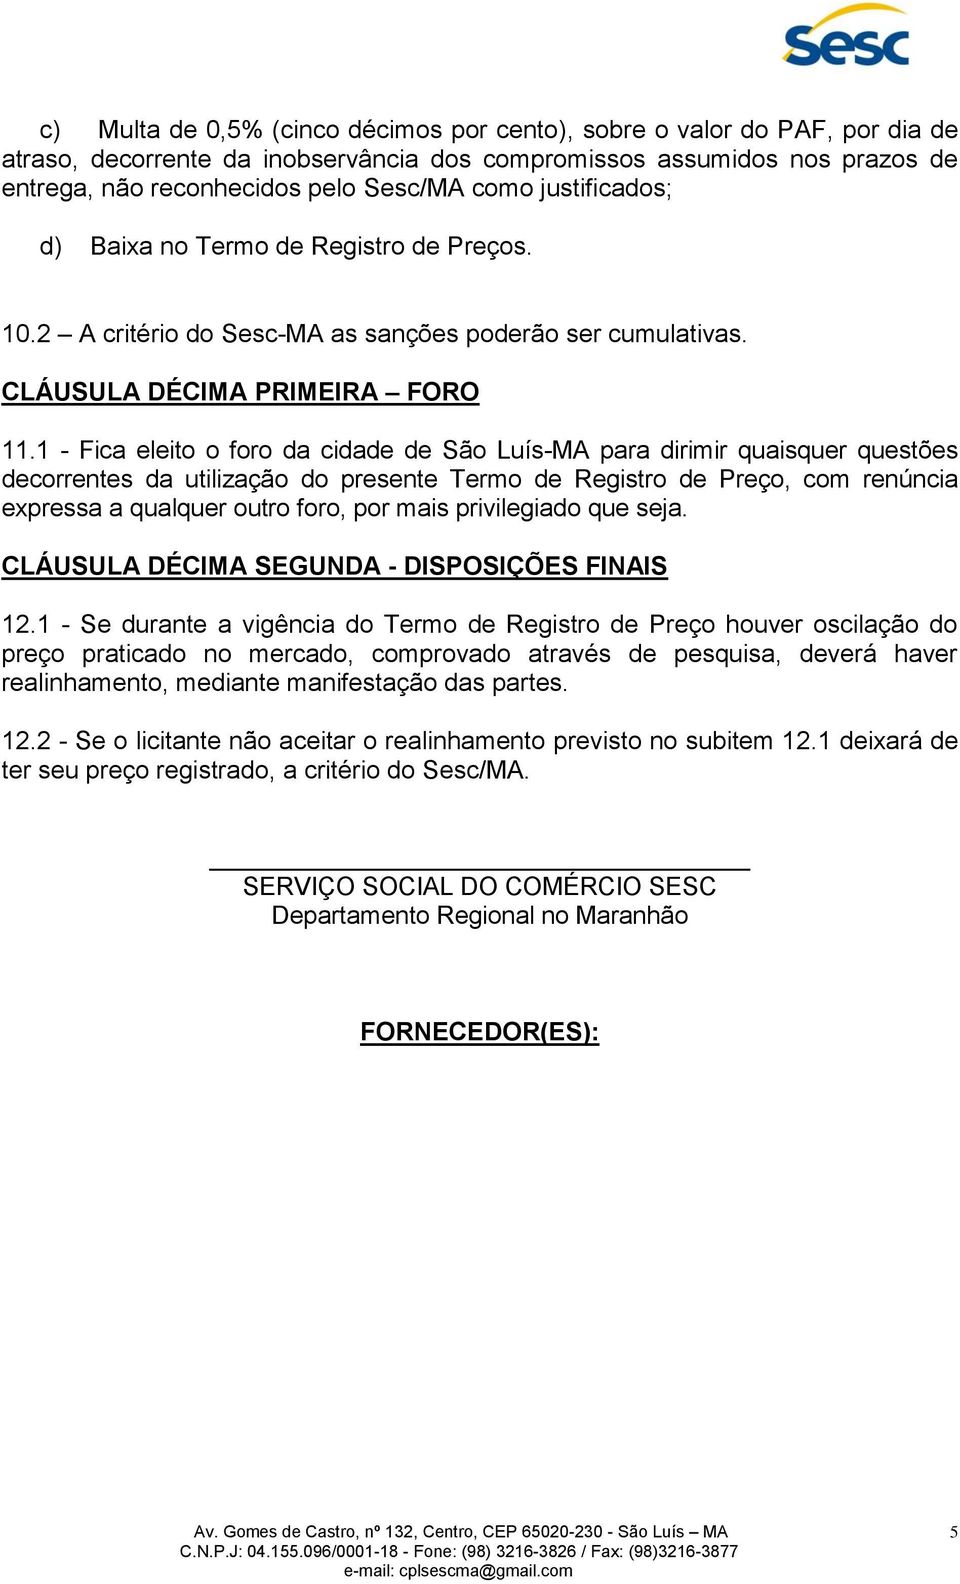 1 - Fica eleito o foro da cidade de São Luís-MA para dirimir quaisquer questões decorrentes da utilização do presente Termo de Registro de Preço, com renúncia expressa a qualquer outro foro, por mais